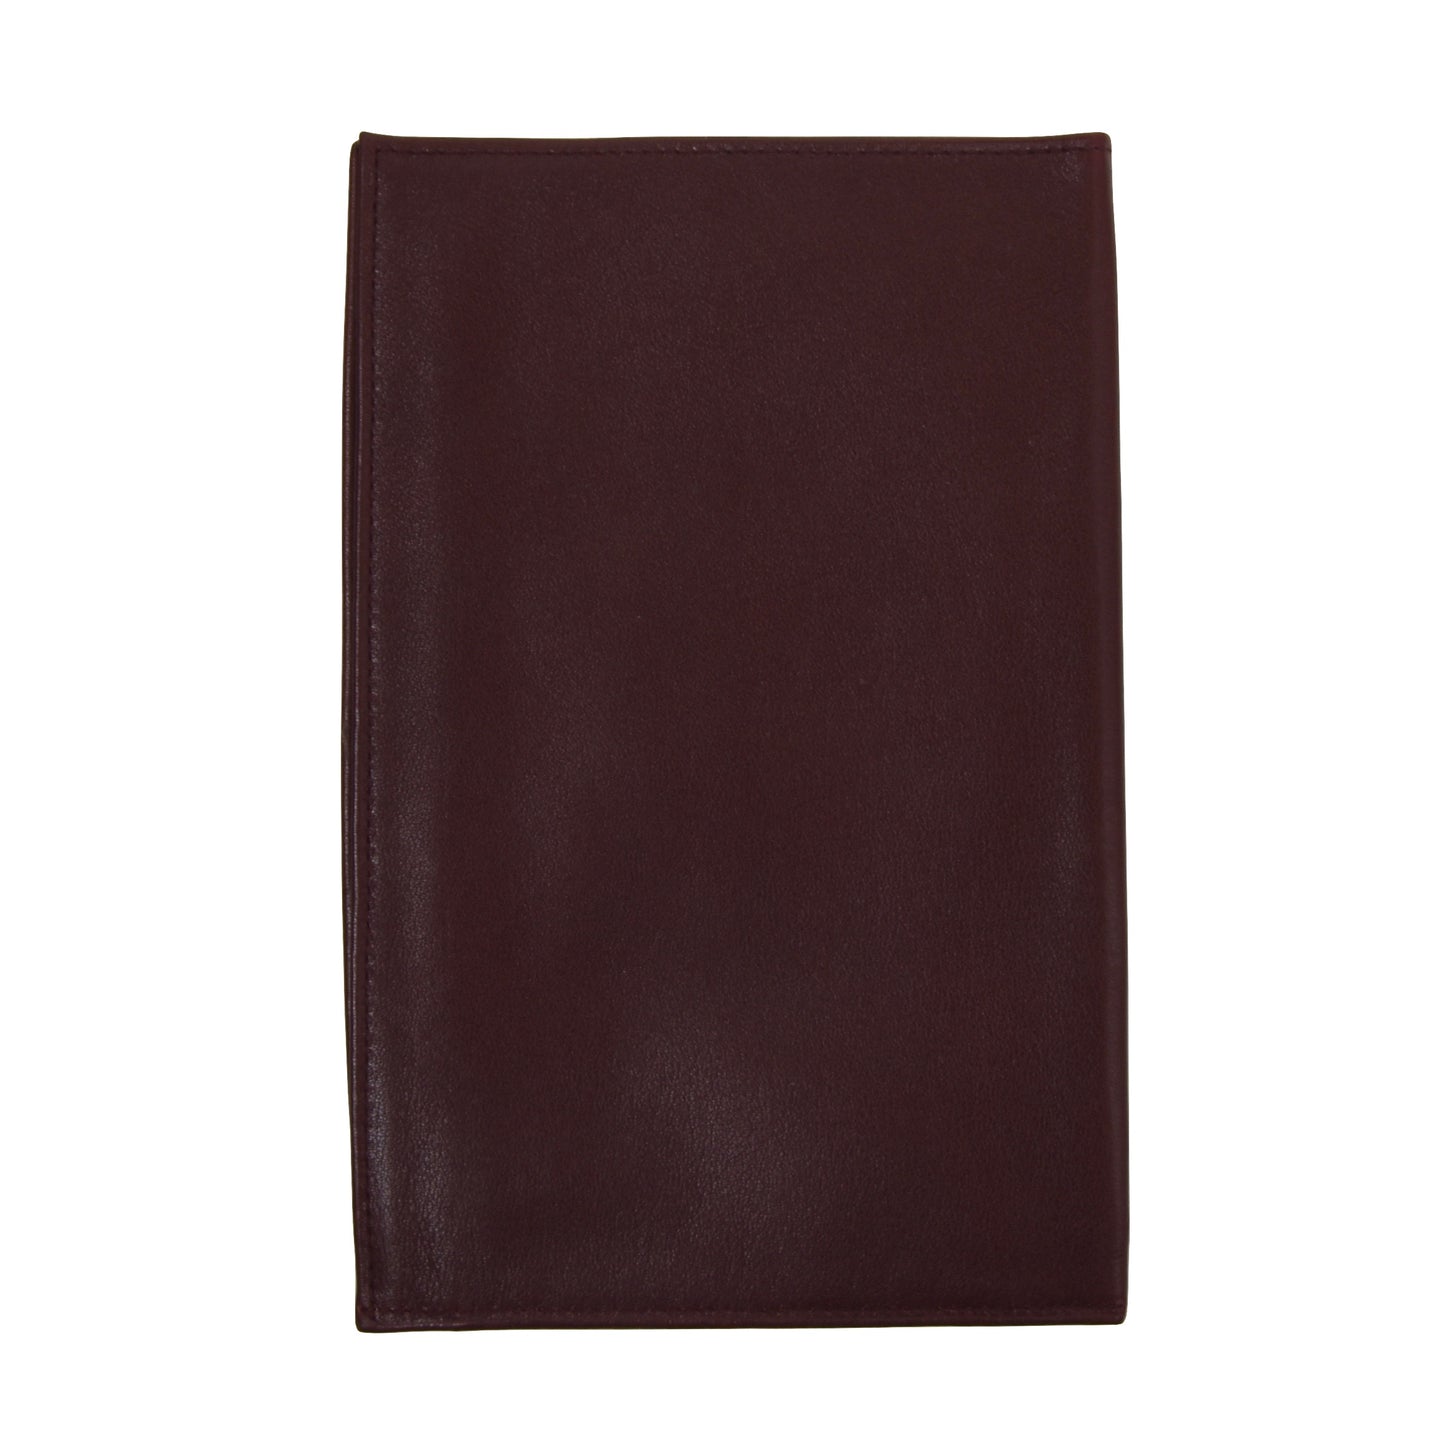 Becker Handmade Leather Passport Case/Portemonnaie - Burgund